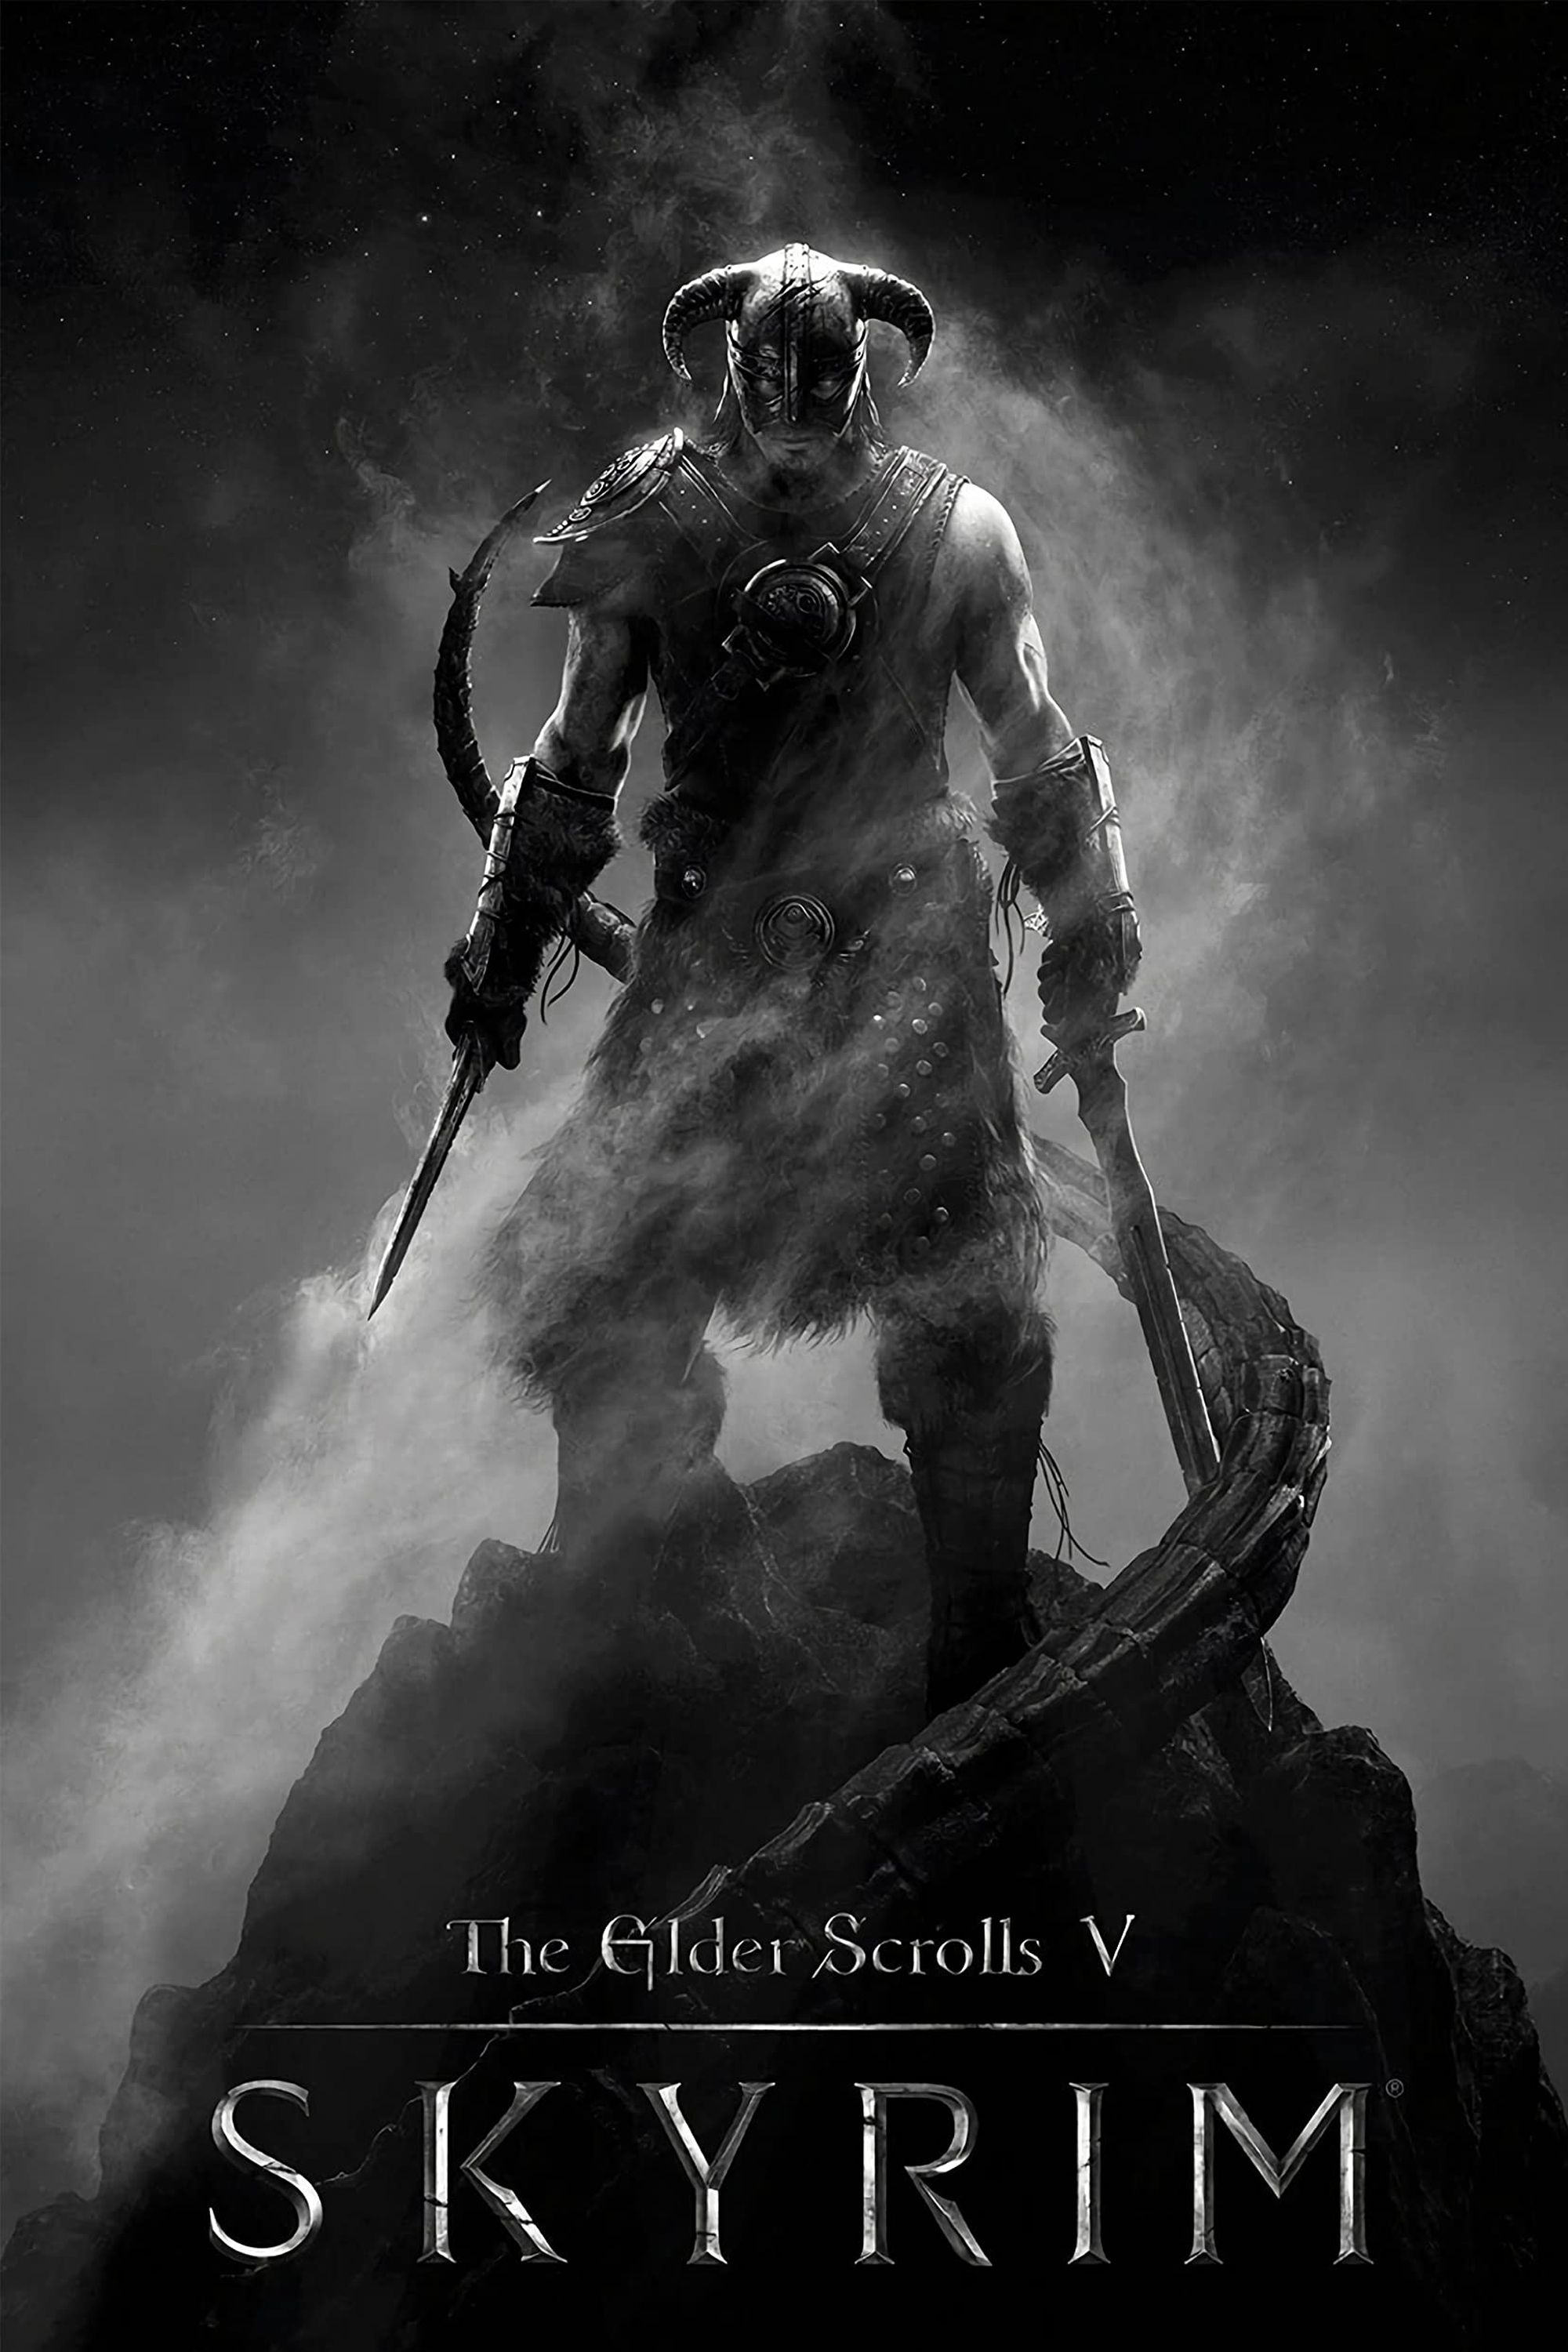 The Elder Scrolls V Skyrim Poster